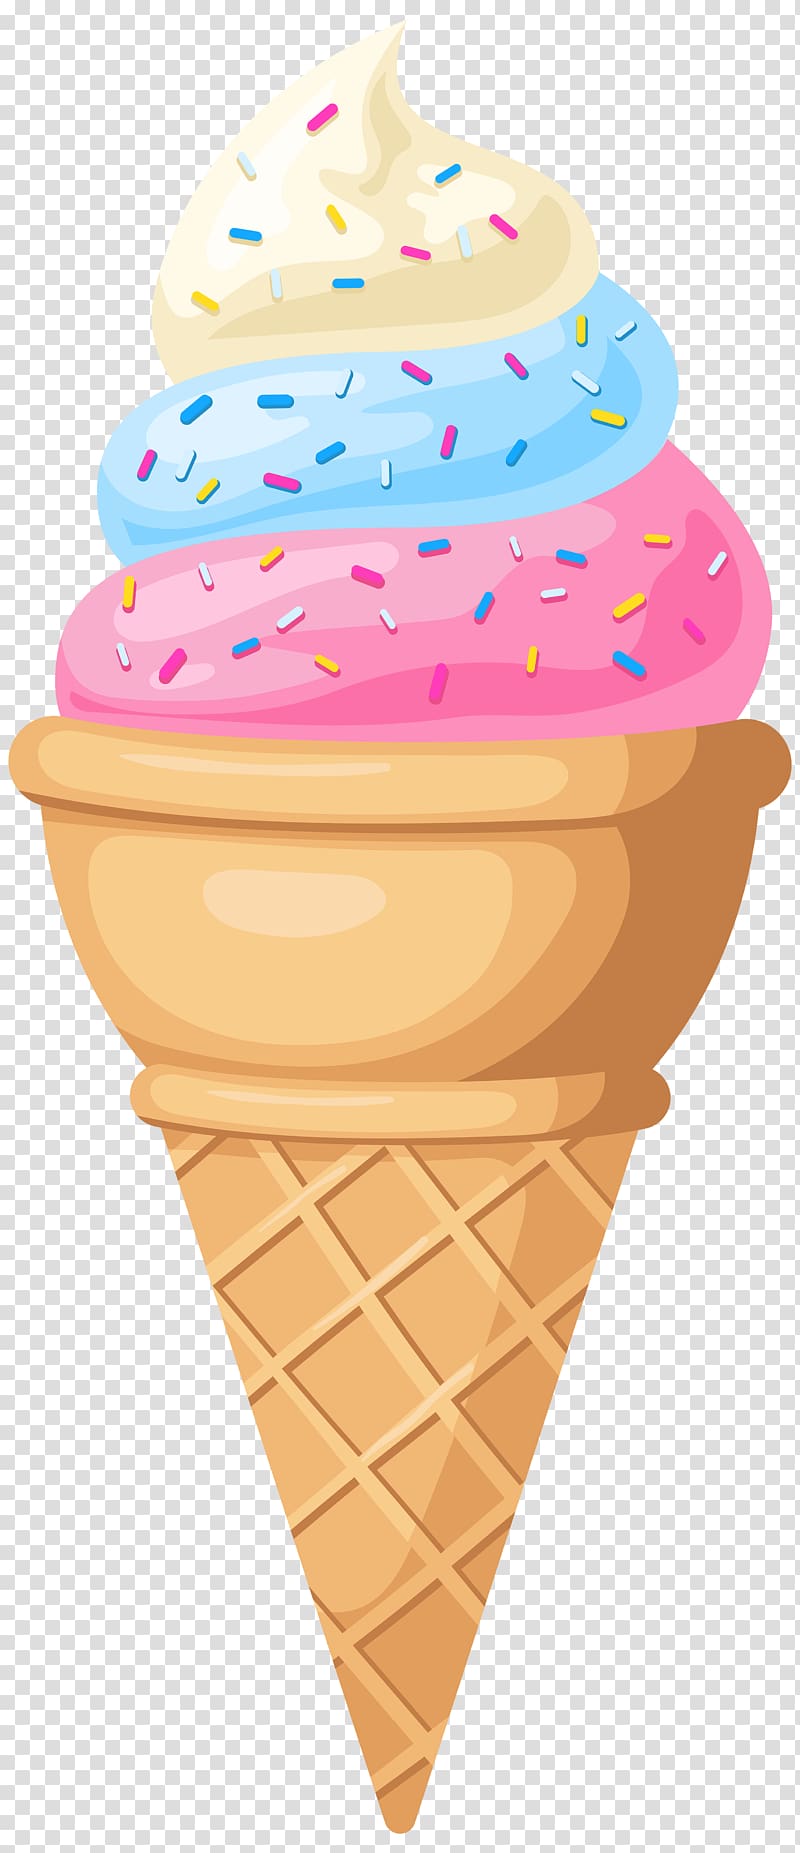 Ice Cream With Cone Illustration Ice Cream Cones Neapolitan Ice Cream Snow Cone Ice Cream